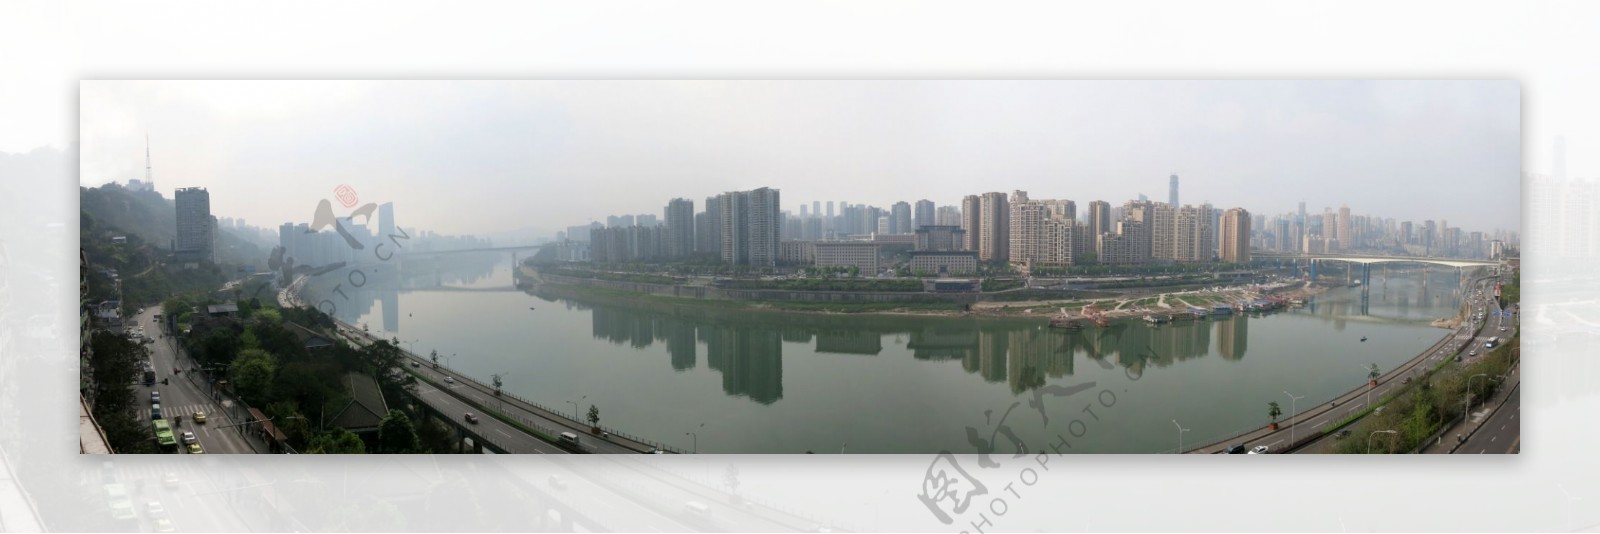 重庆江北区全景图